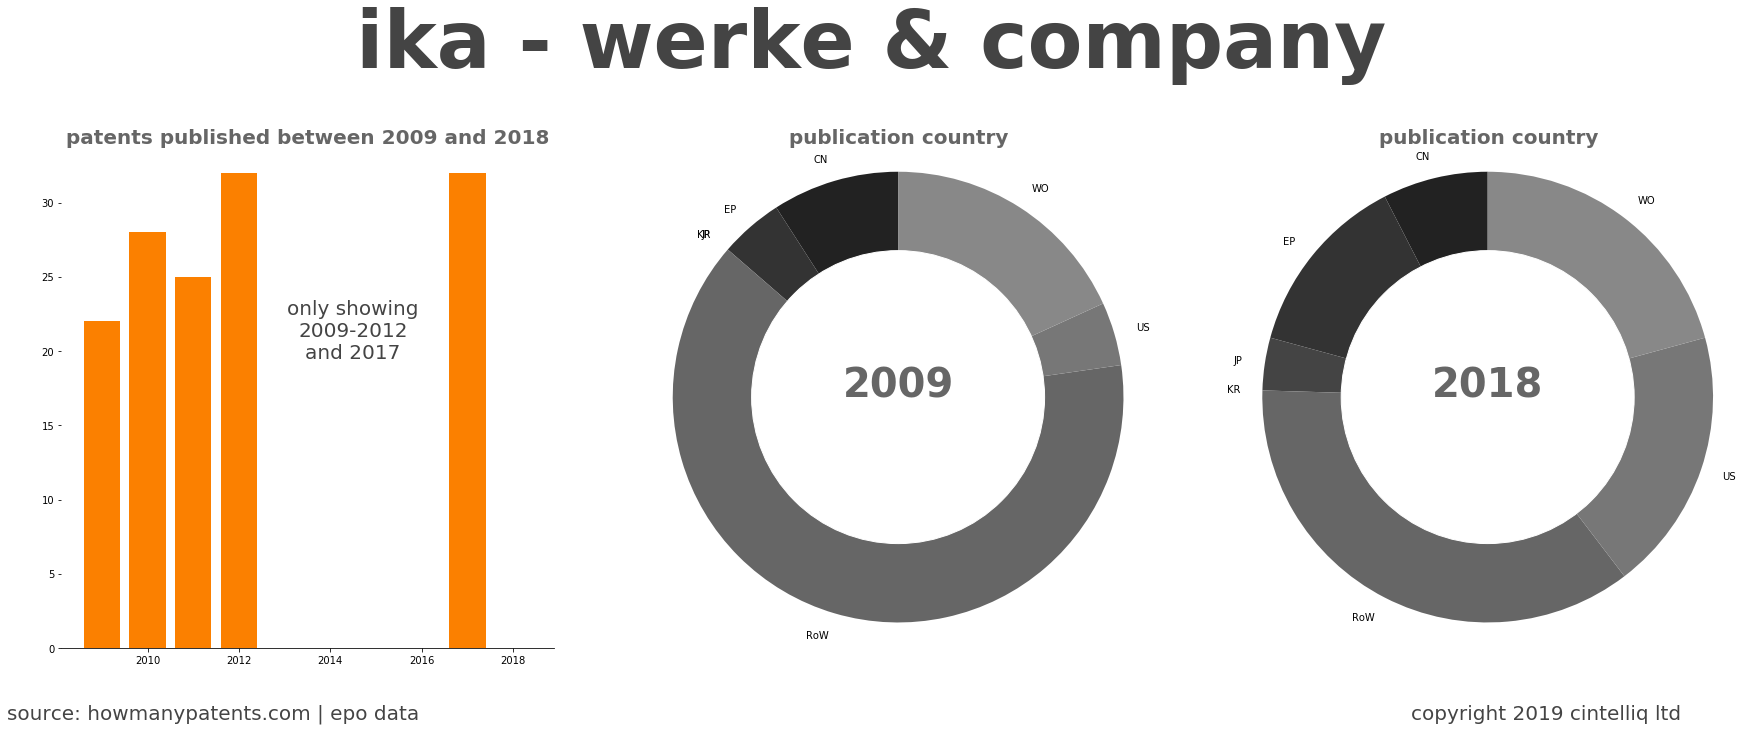 summary of patents for Ika - Werke & Company